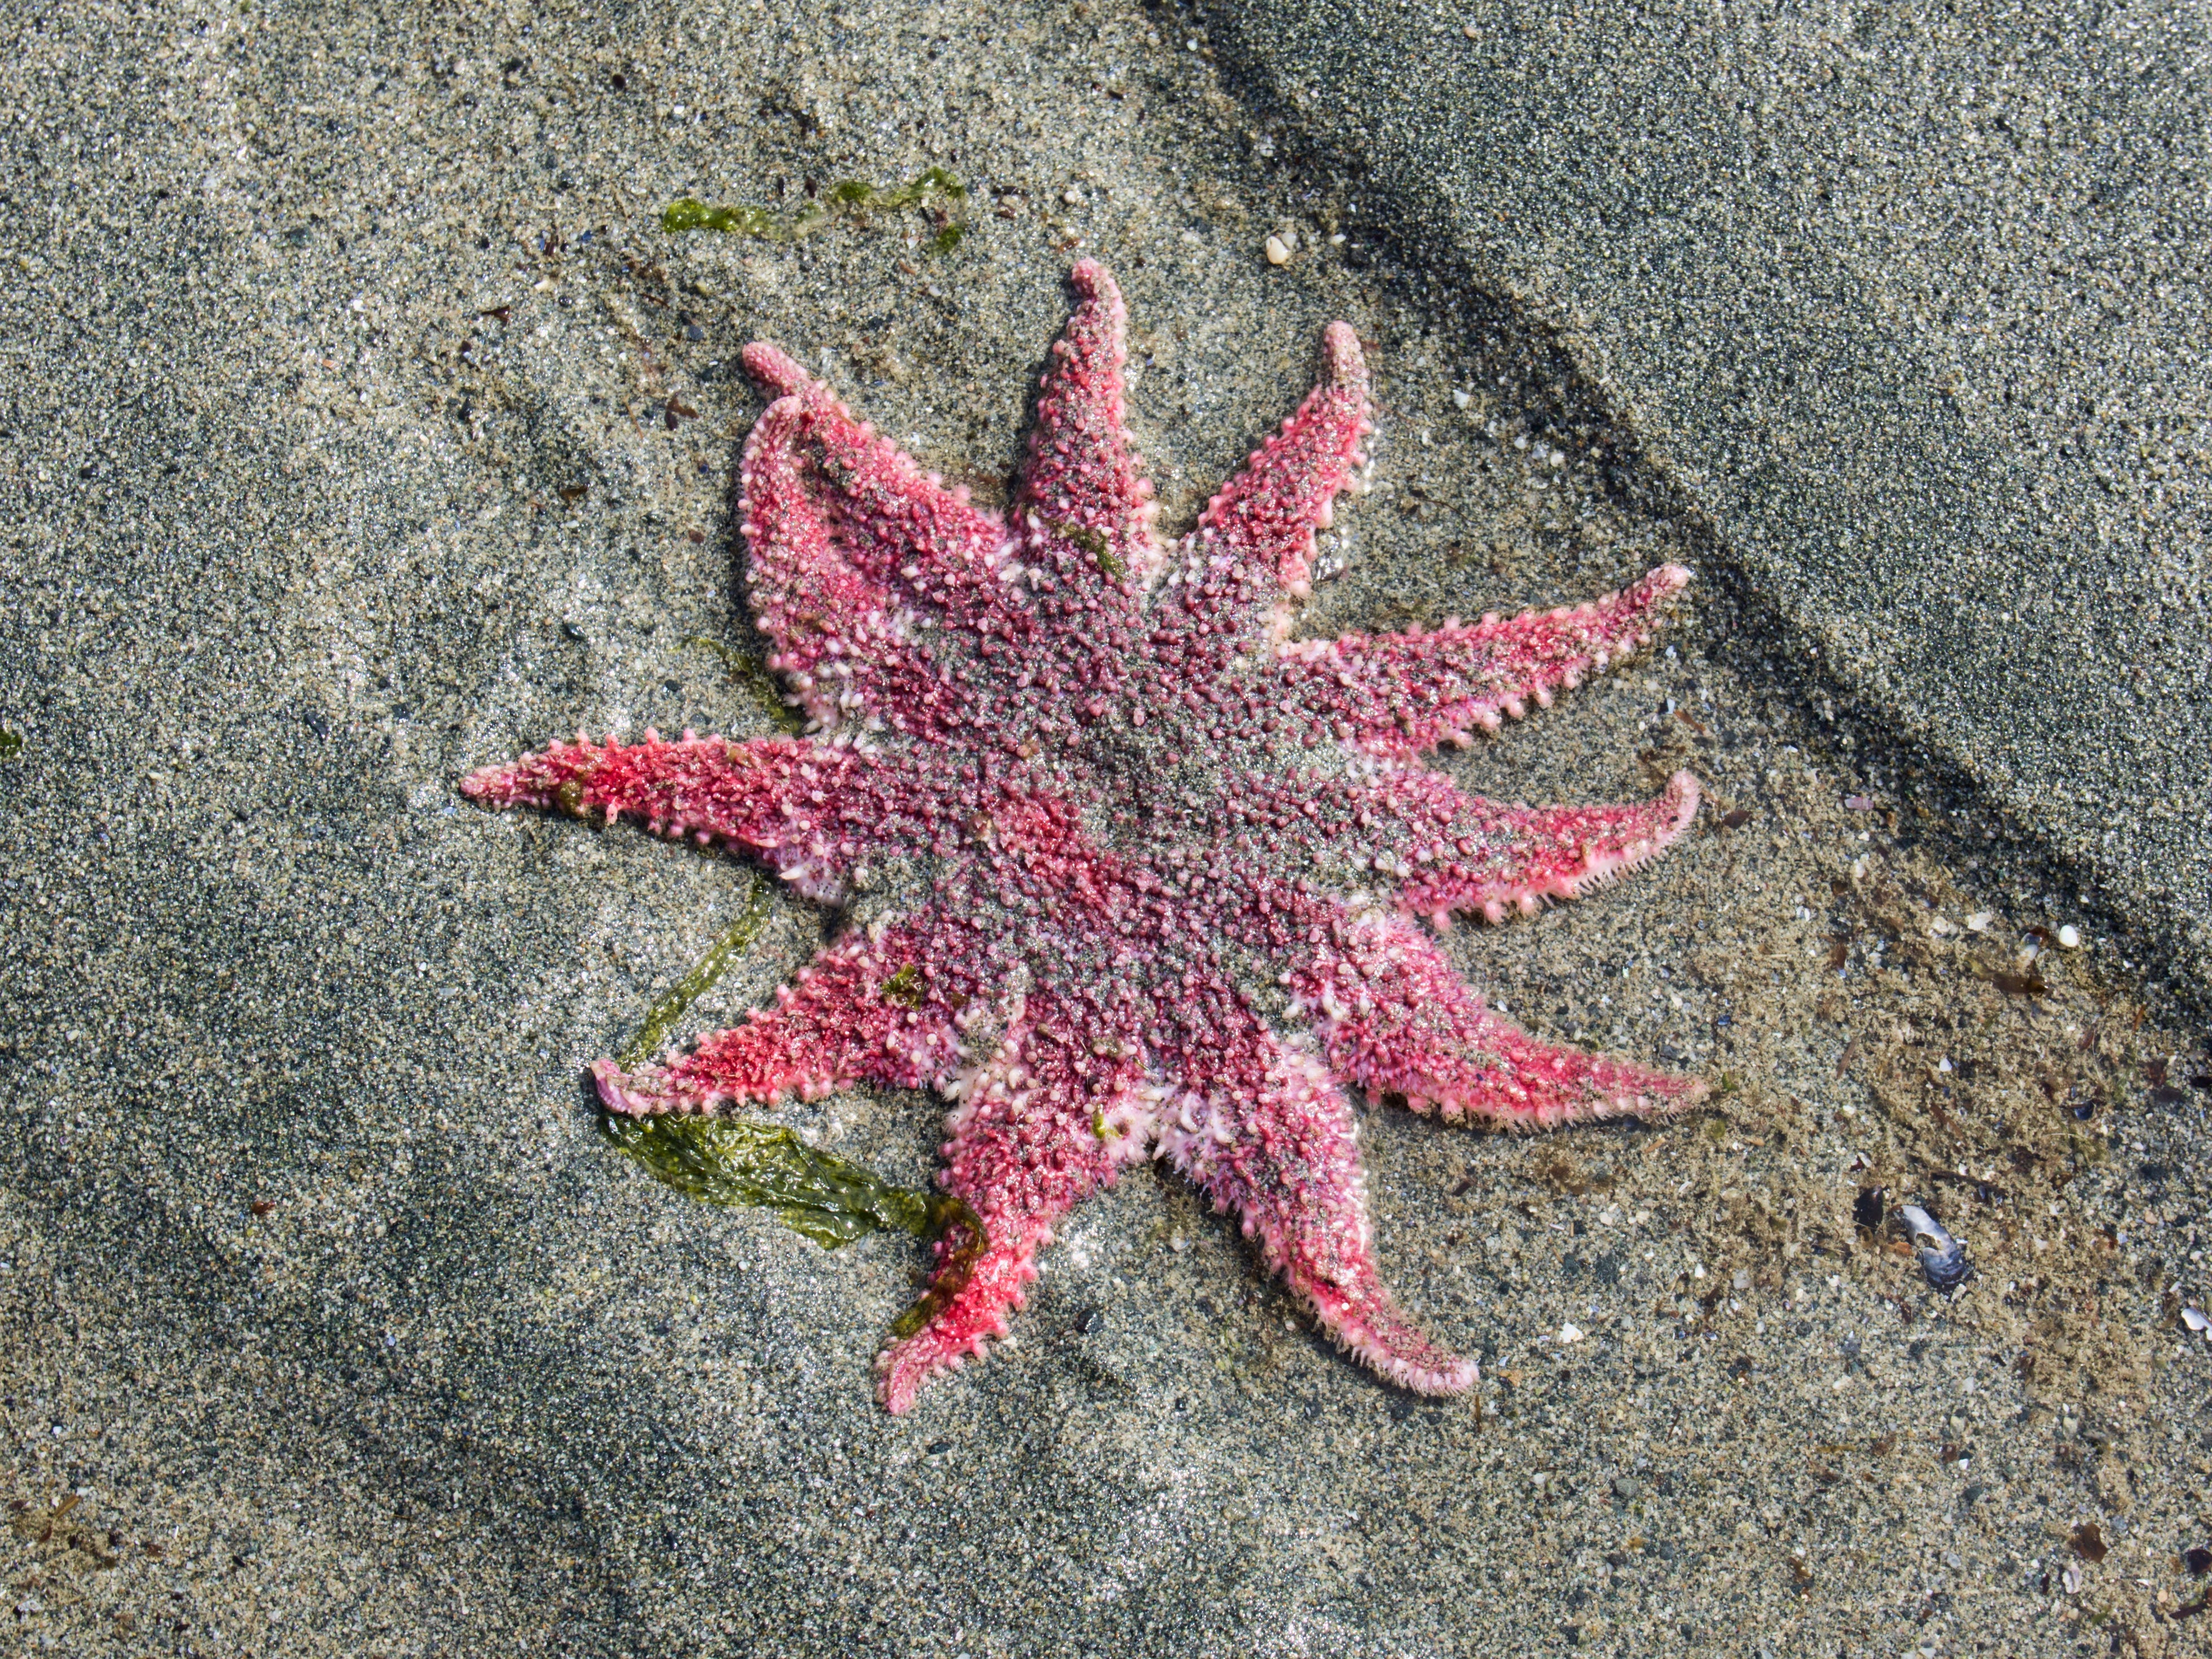 Sunflower Sea Star Seestern am südöstlichen Strand von Alaska bei Ebbe.